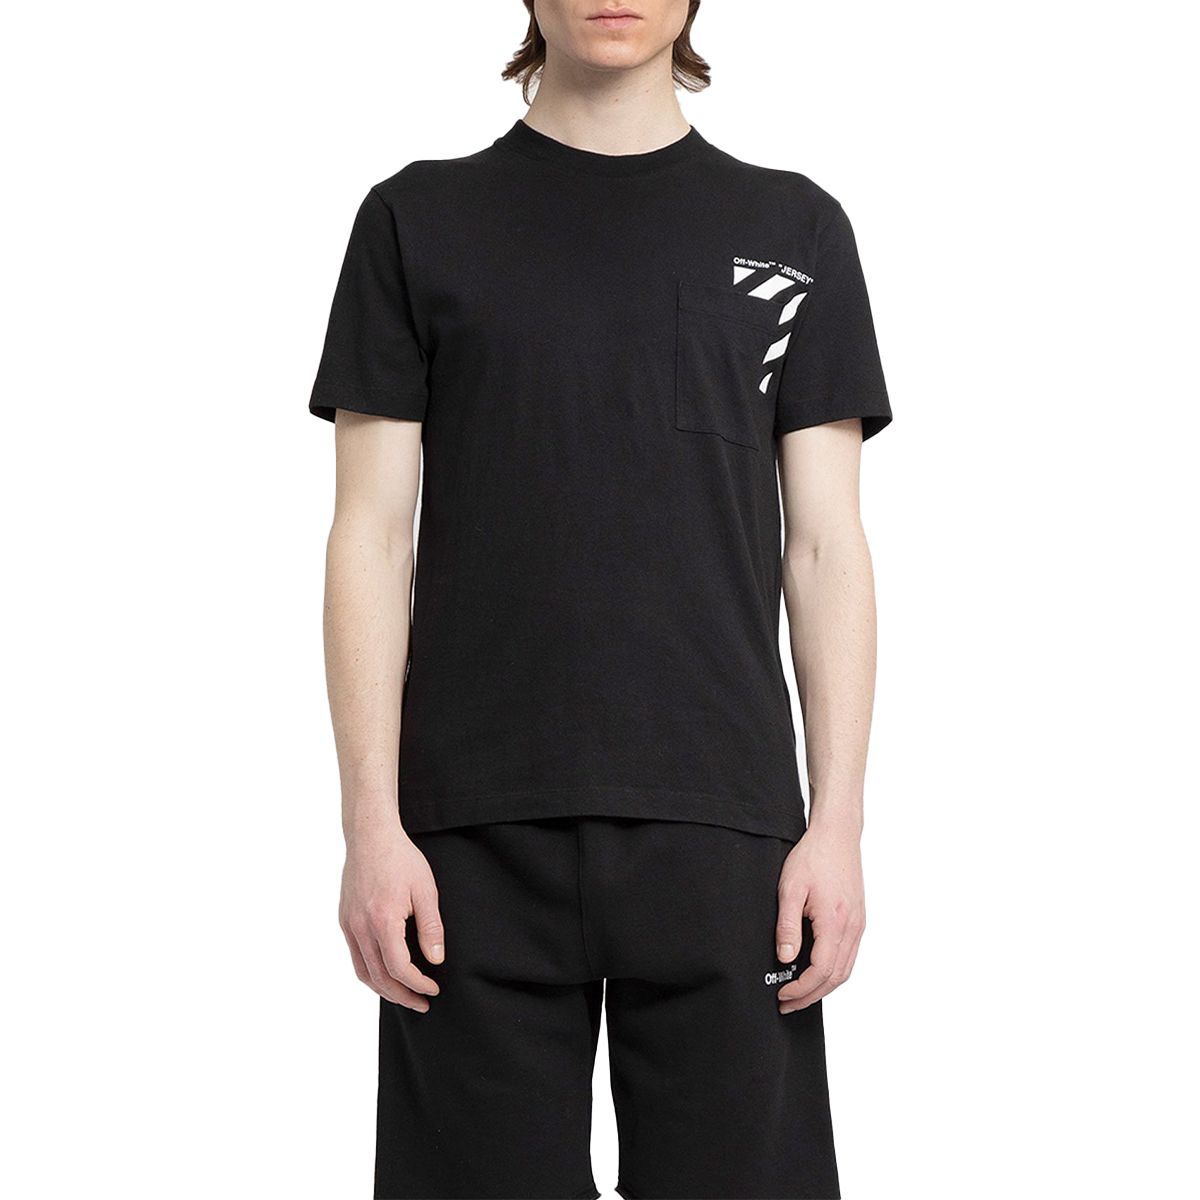 Diag Pocket Slim T-shirt/Black